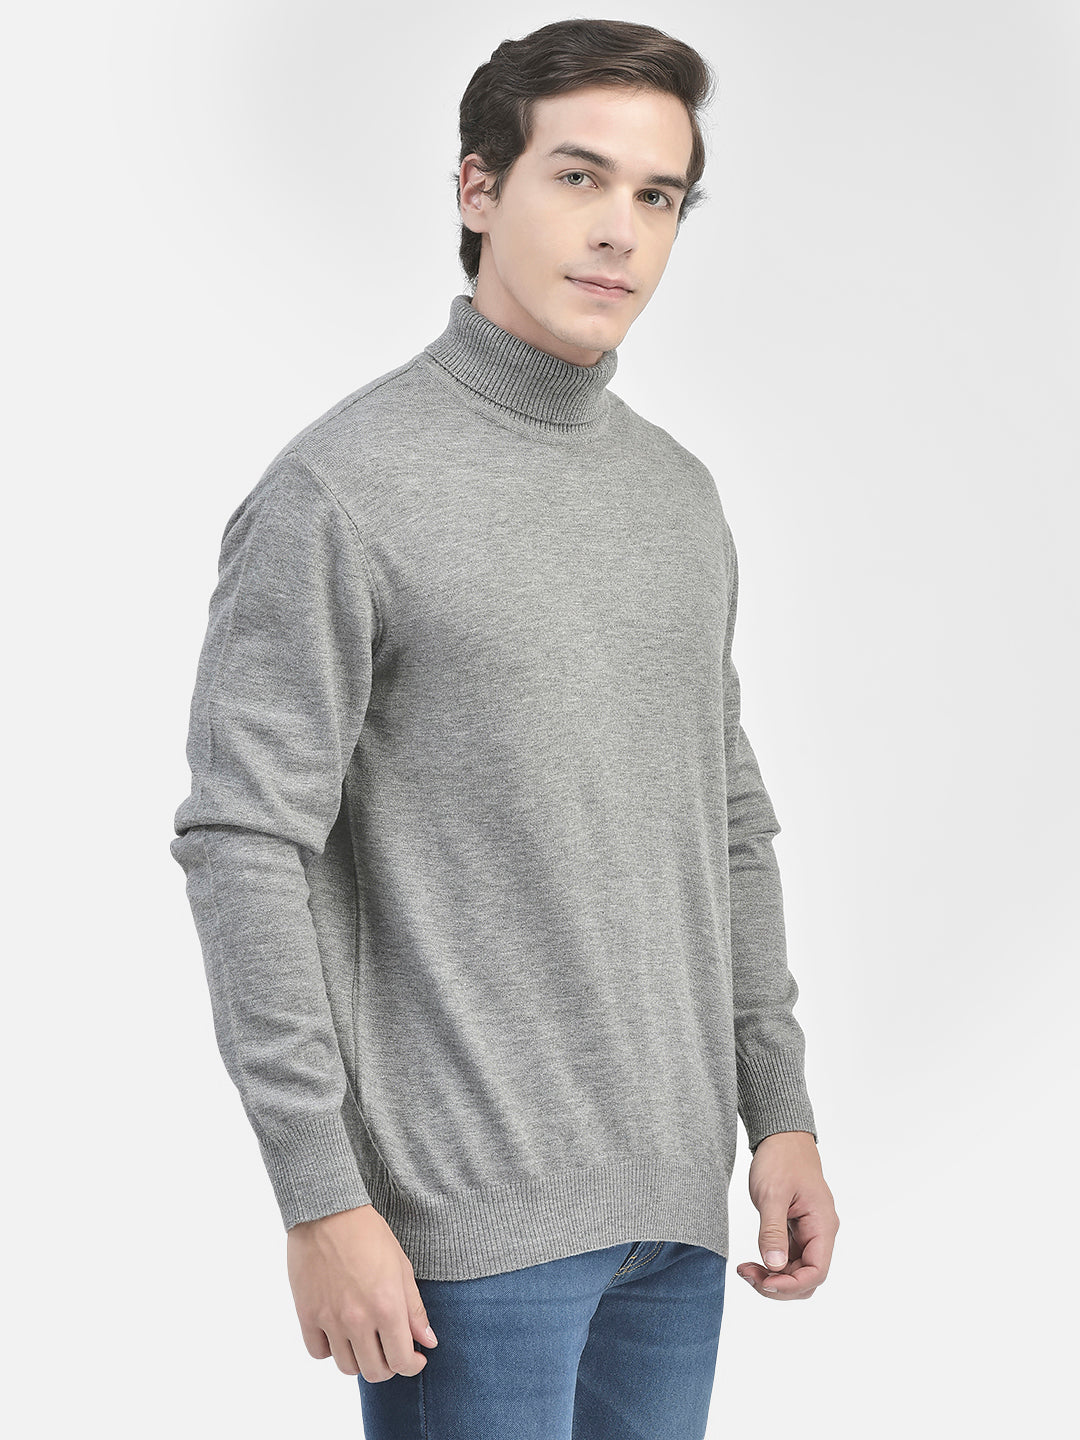 Grey Turtle Neck Sweater-Men Sweaters-Crimsoune Club